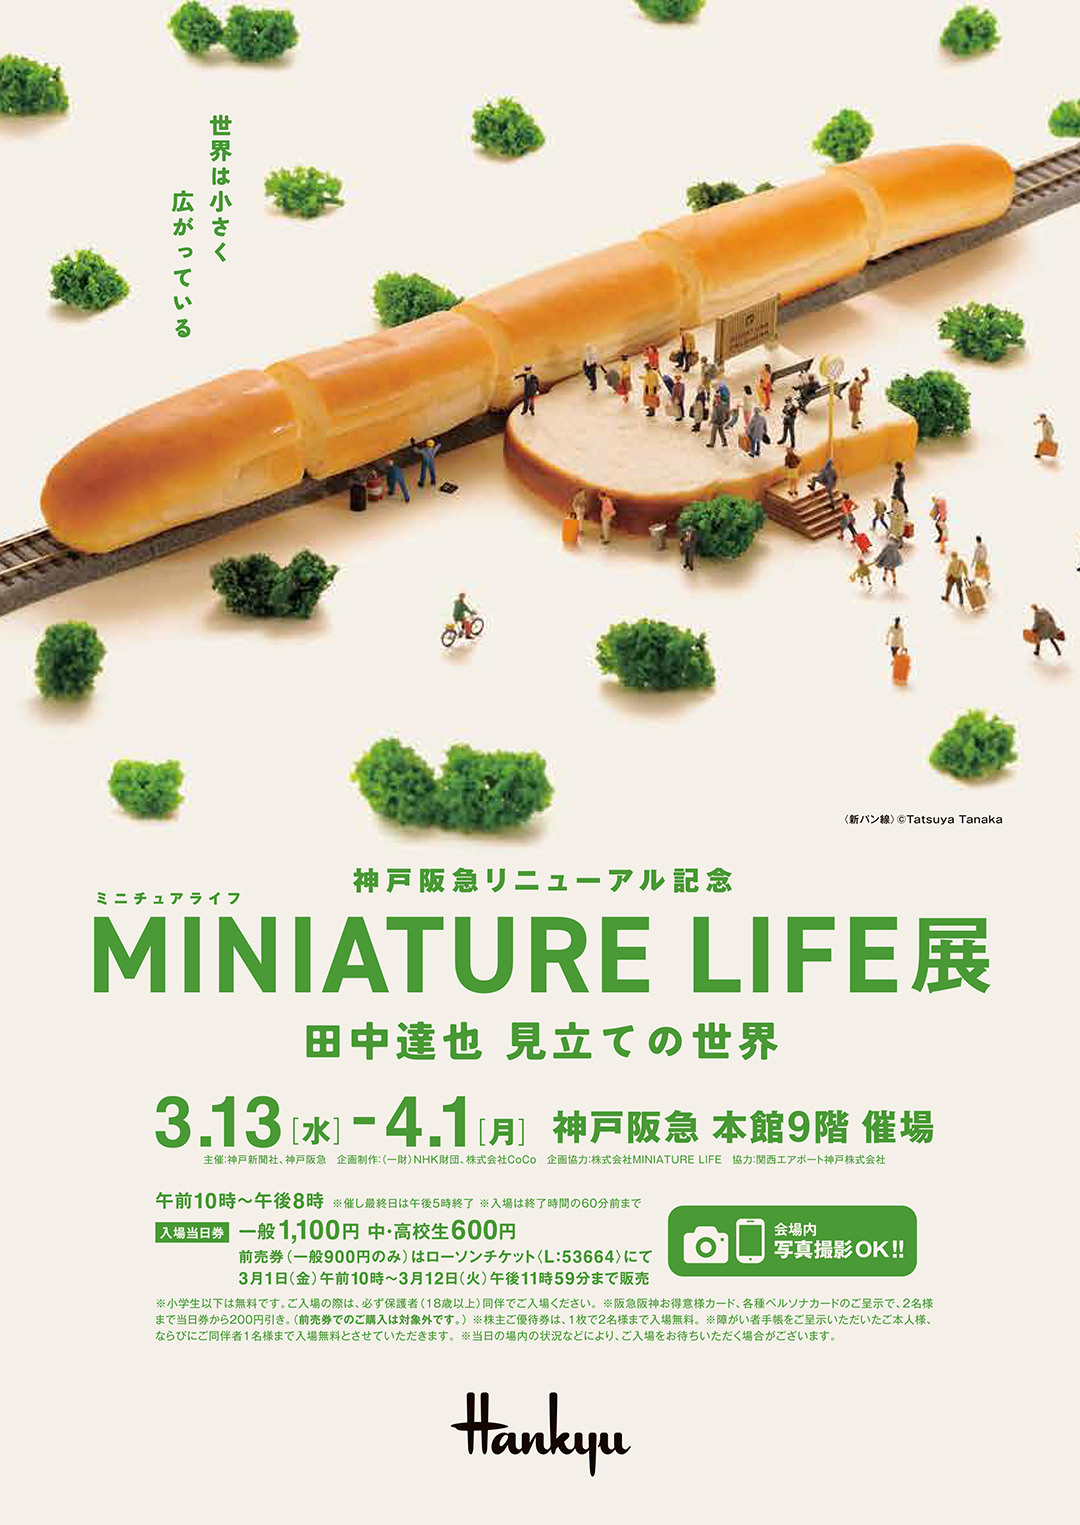 MINIATURE LIFE展 in 神戸